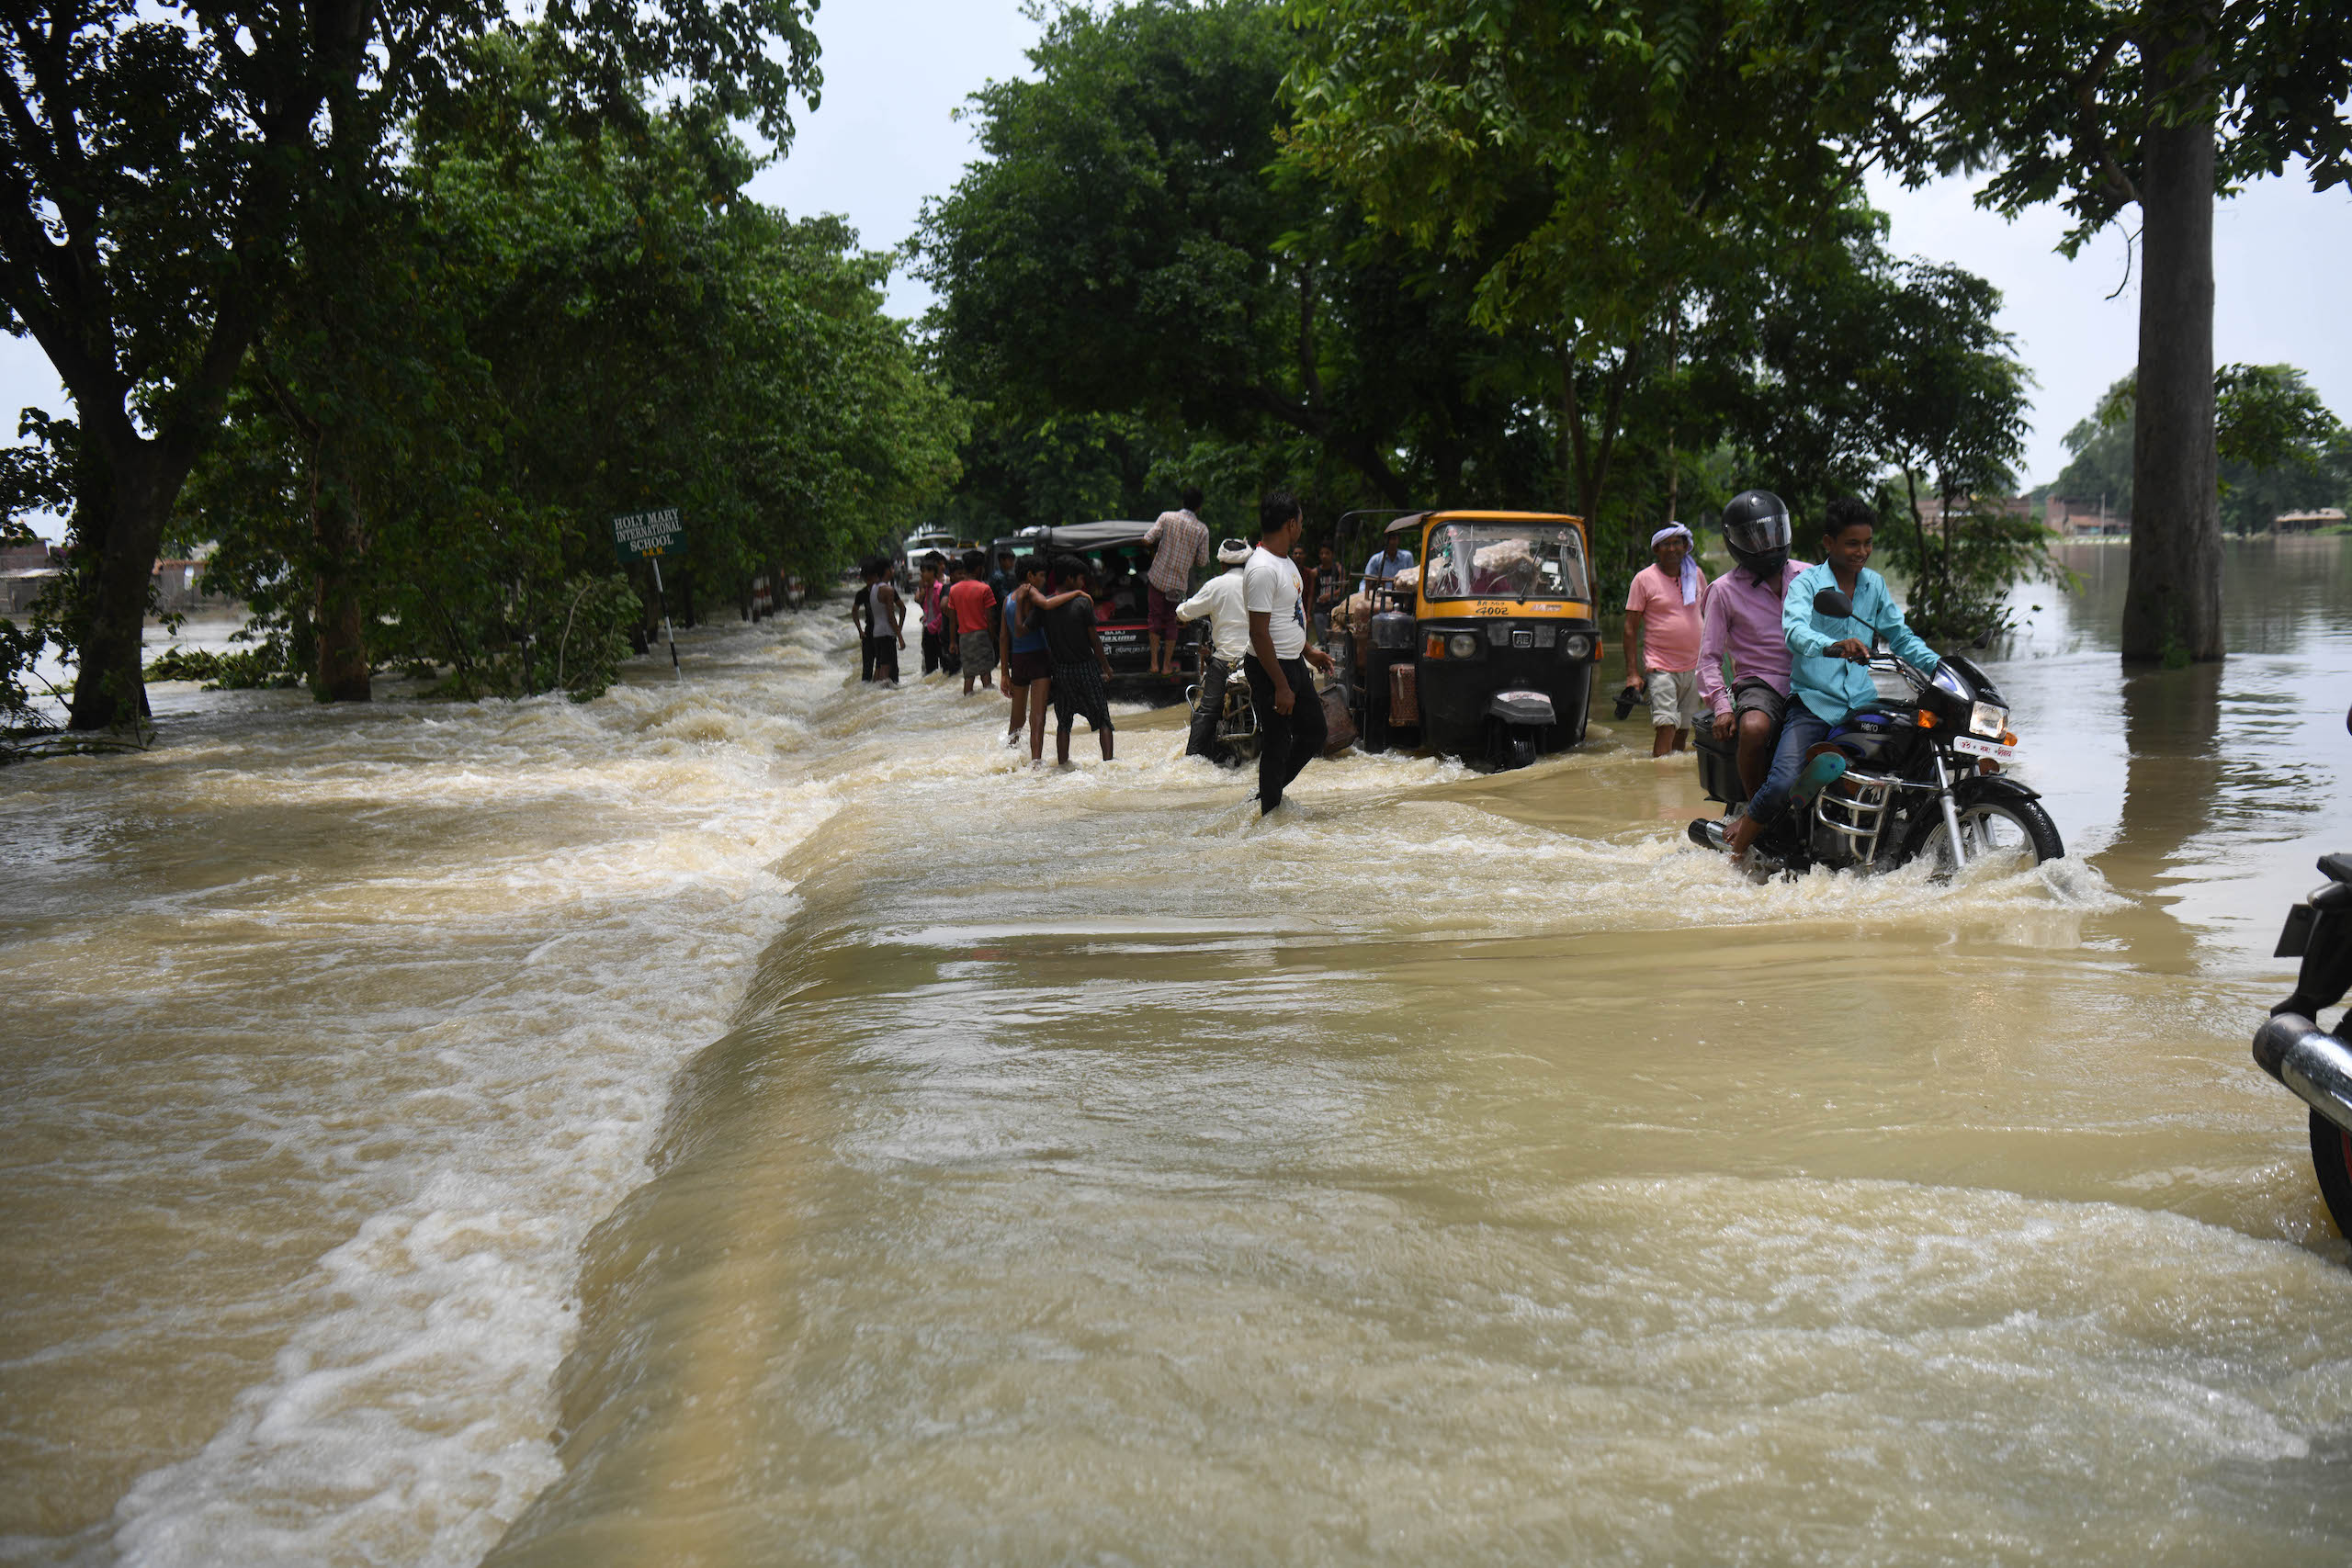 2020 monsoon flooding in Muzaffarpur, Bihar, India, Sachin Kumar